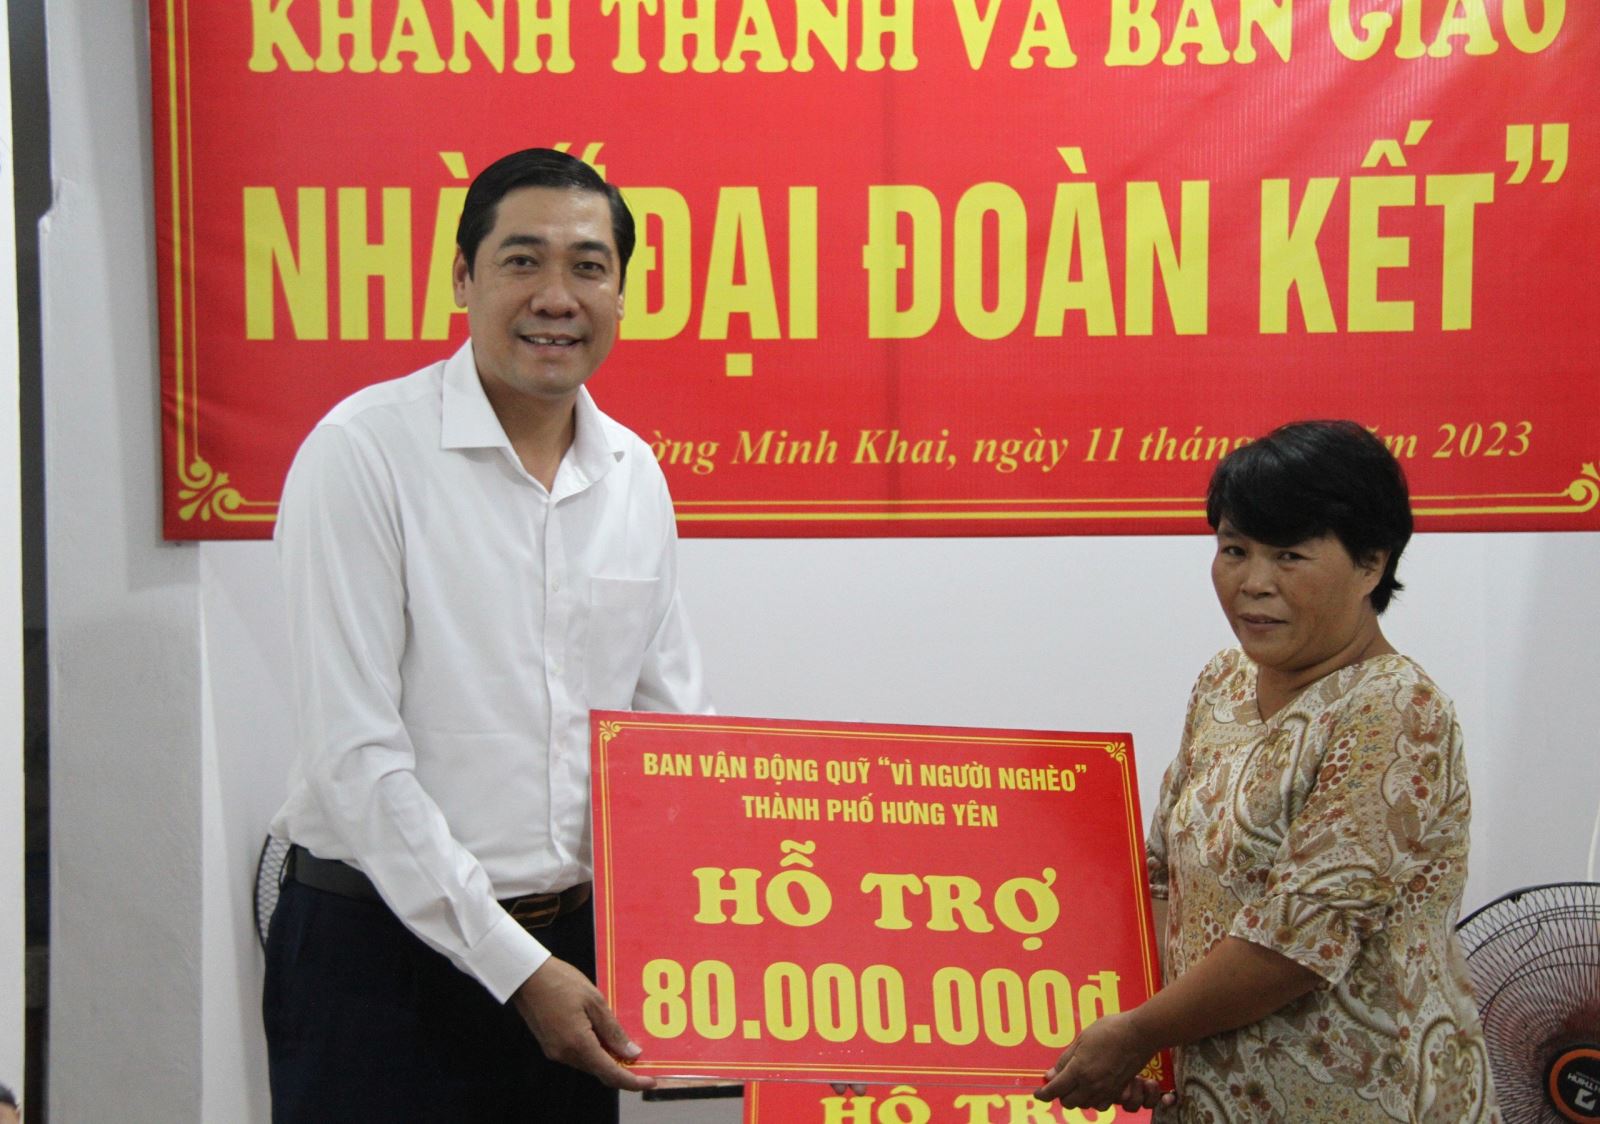 Khánh thành nhà đại đoàn kết cho hộ nghèo trên địa bàn phường Minh Khai